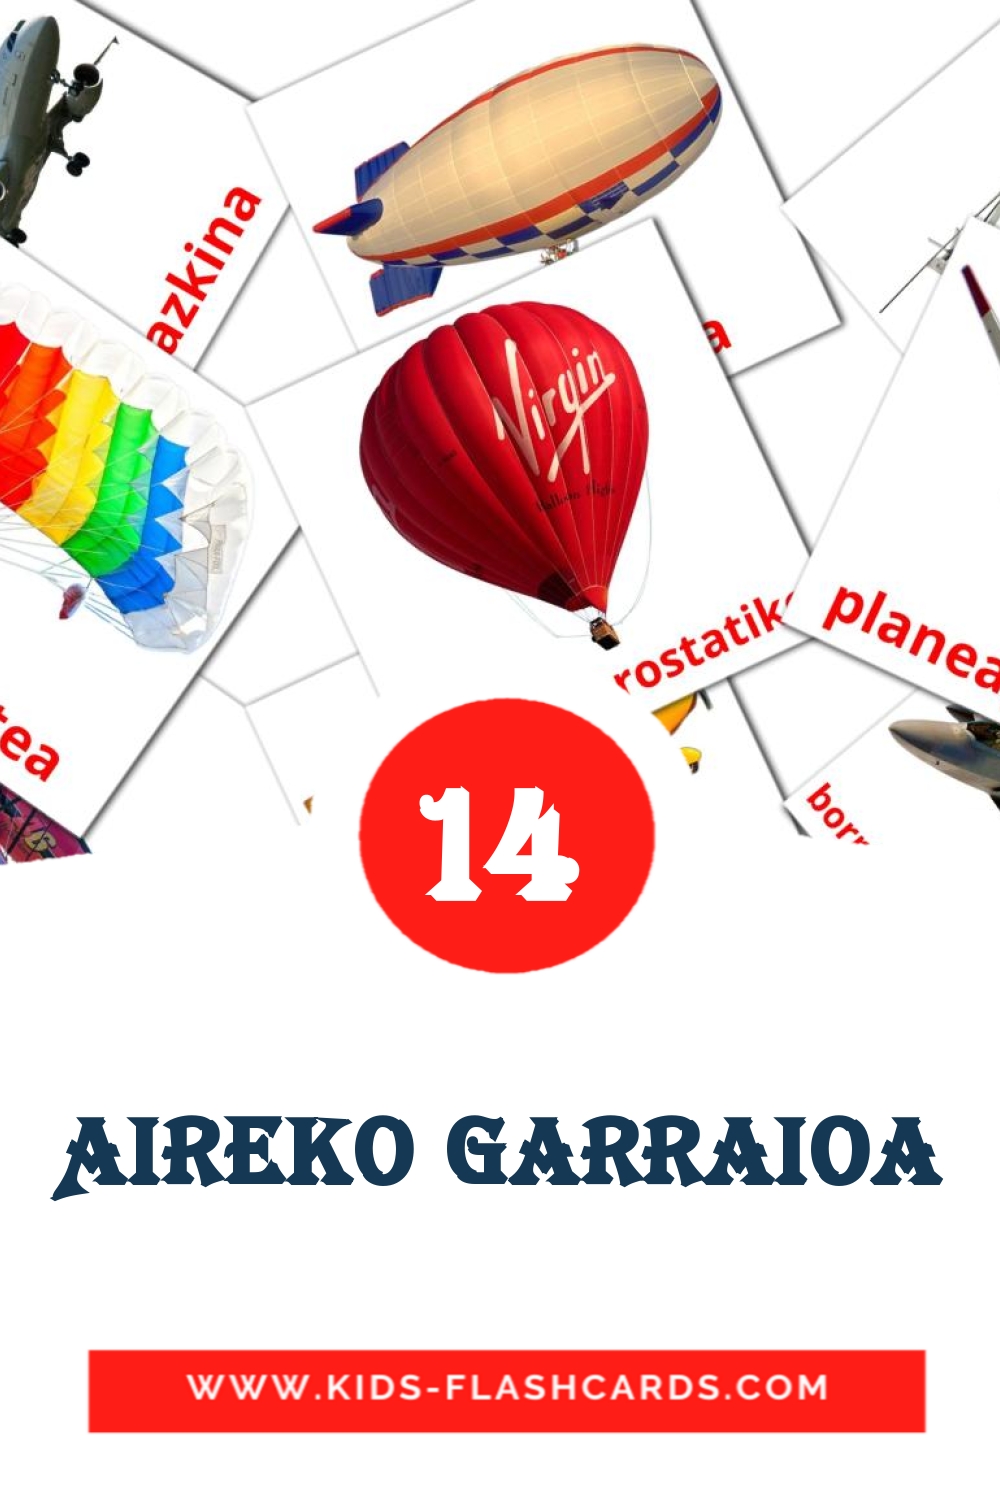 14 Aireko garraioa Bildkarten für den Kindergarten auf Baskische